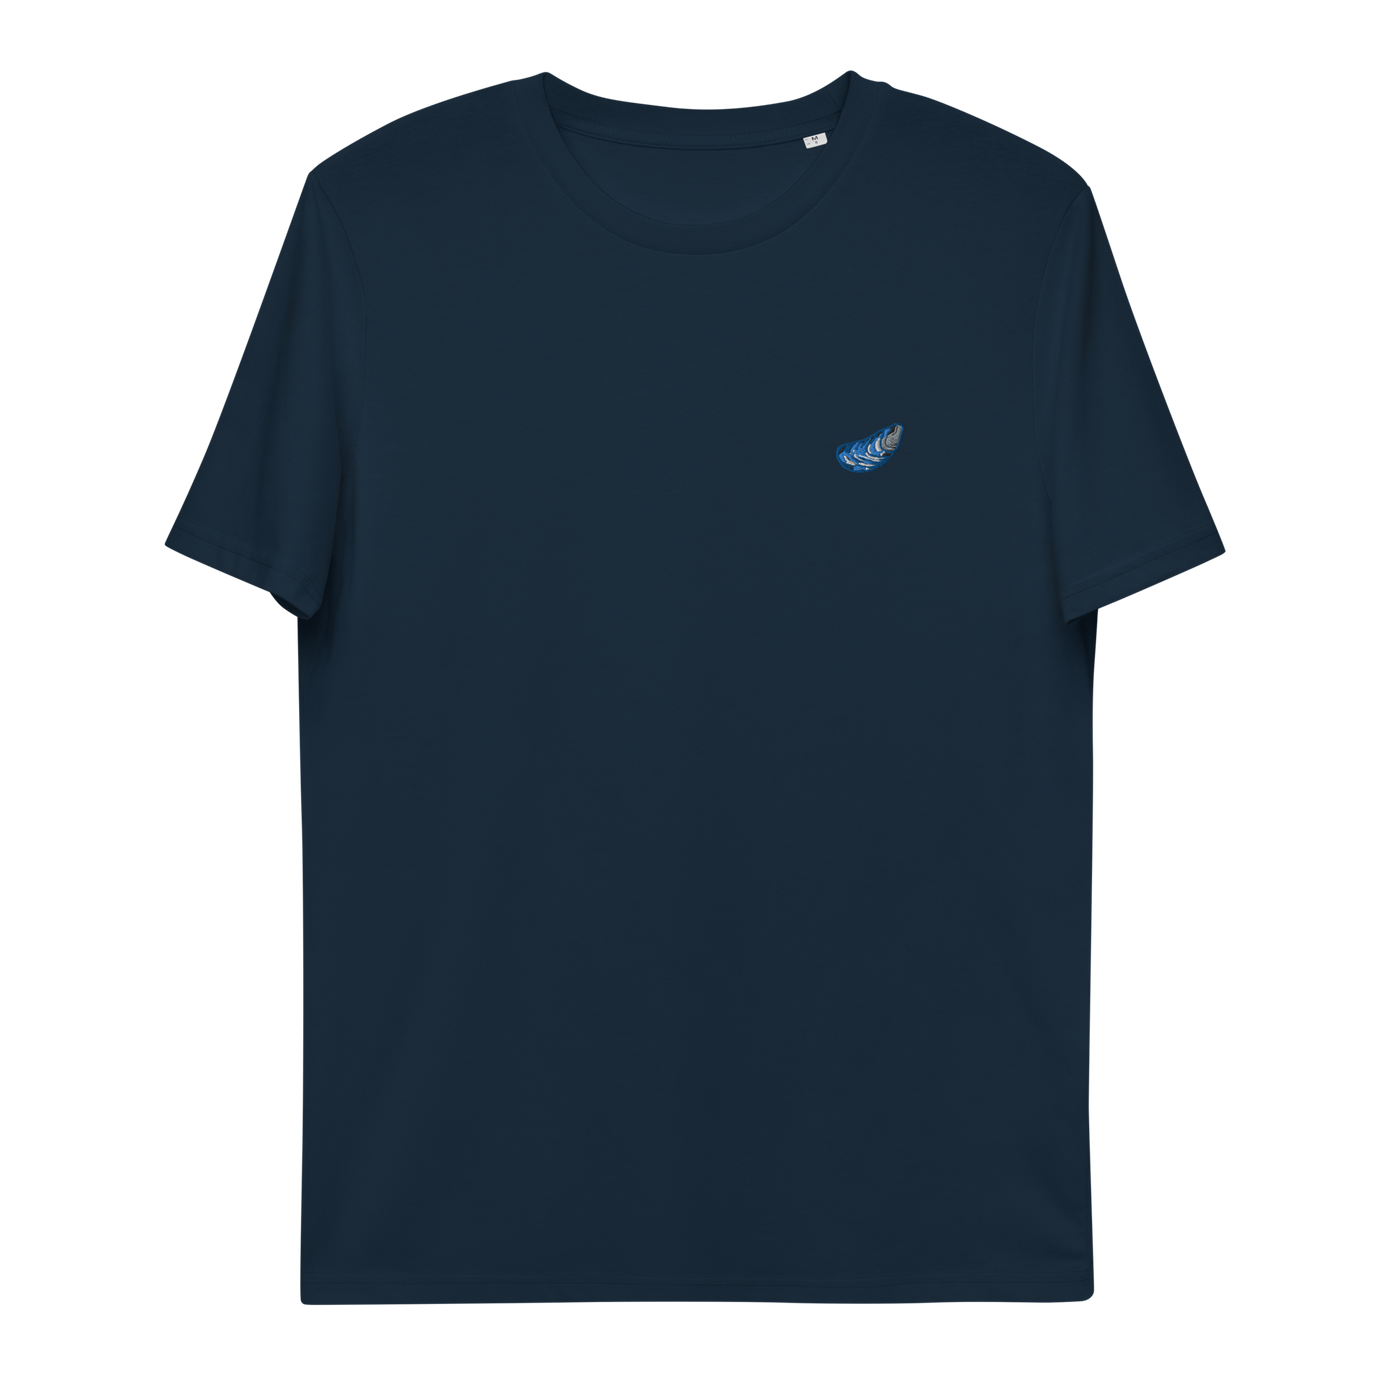 Blåmusslan Eco T-shirt